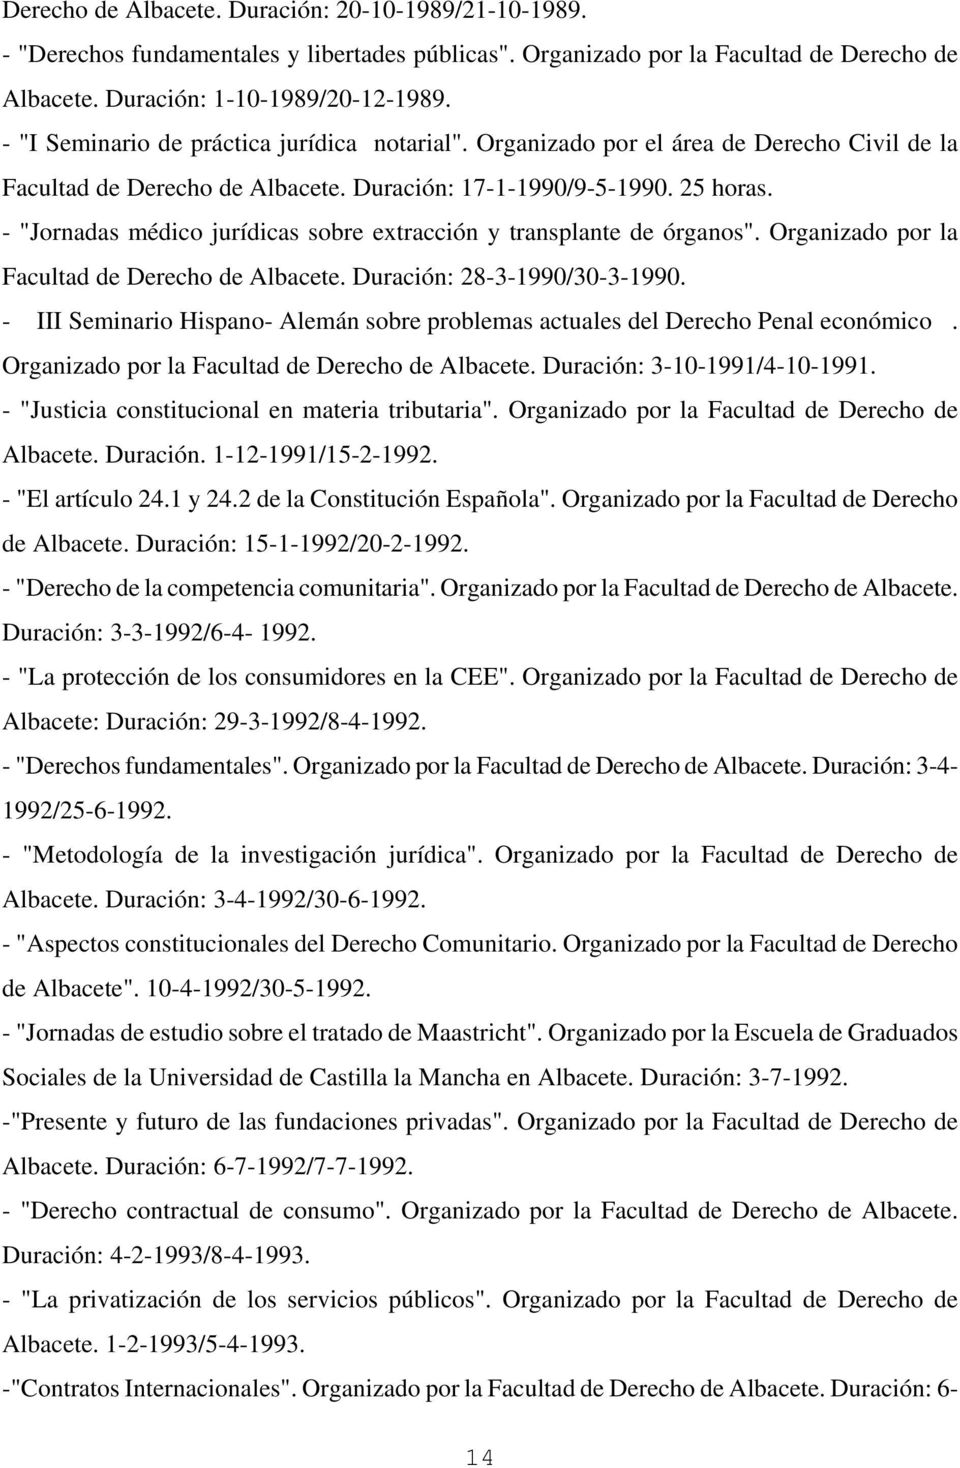 - "Jornadas médico jurídicas sobre extracción y transplante de órganos". Organizado por la Facultad de Derecho de Albacete. Duración: 28-3-1990/30-3-1990.